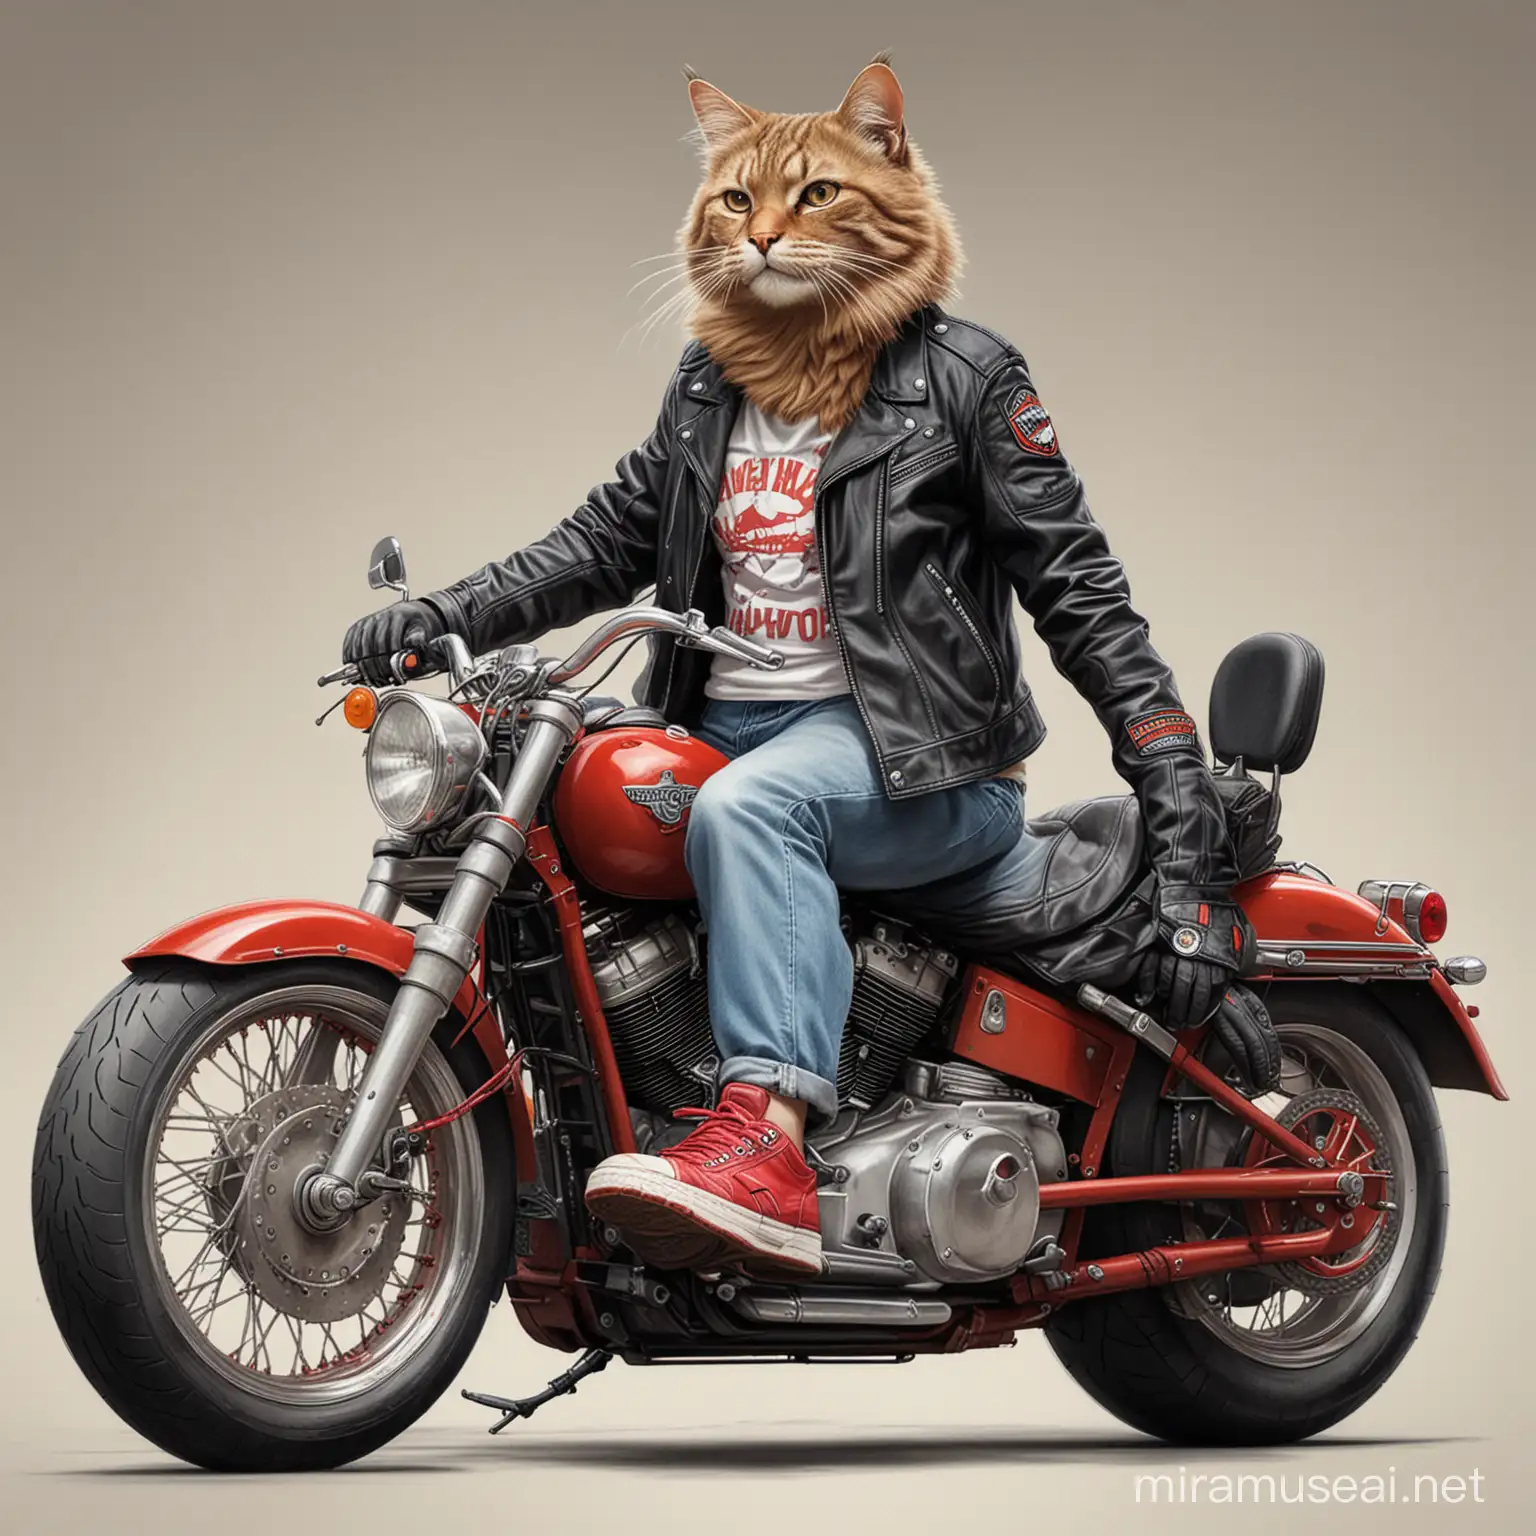 buat gambar realistis seekor kucing besar mengenderai sepeda motor Harley Davidson, kucing memakai jaket, celana pendek dan sepatu sneaker warna merah